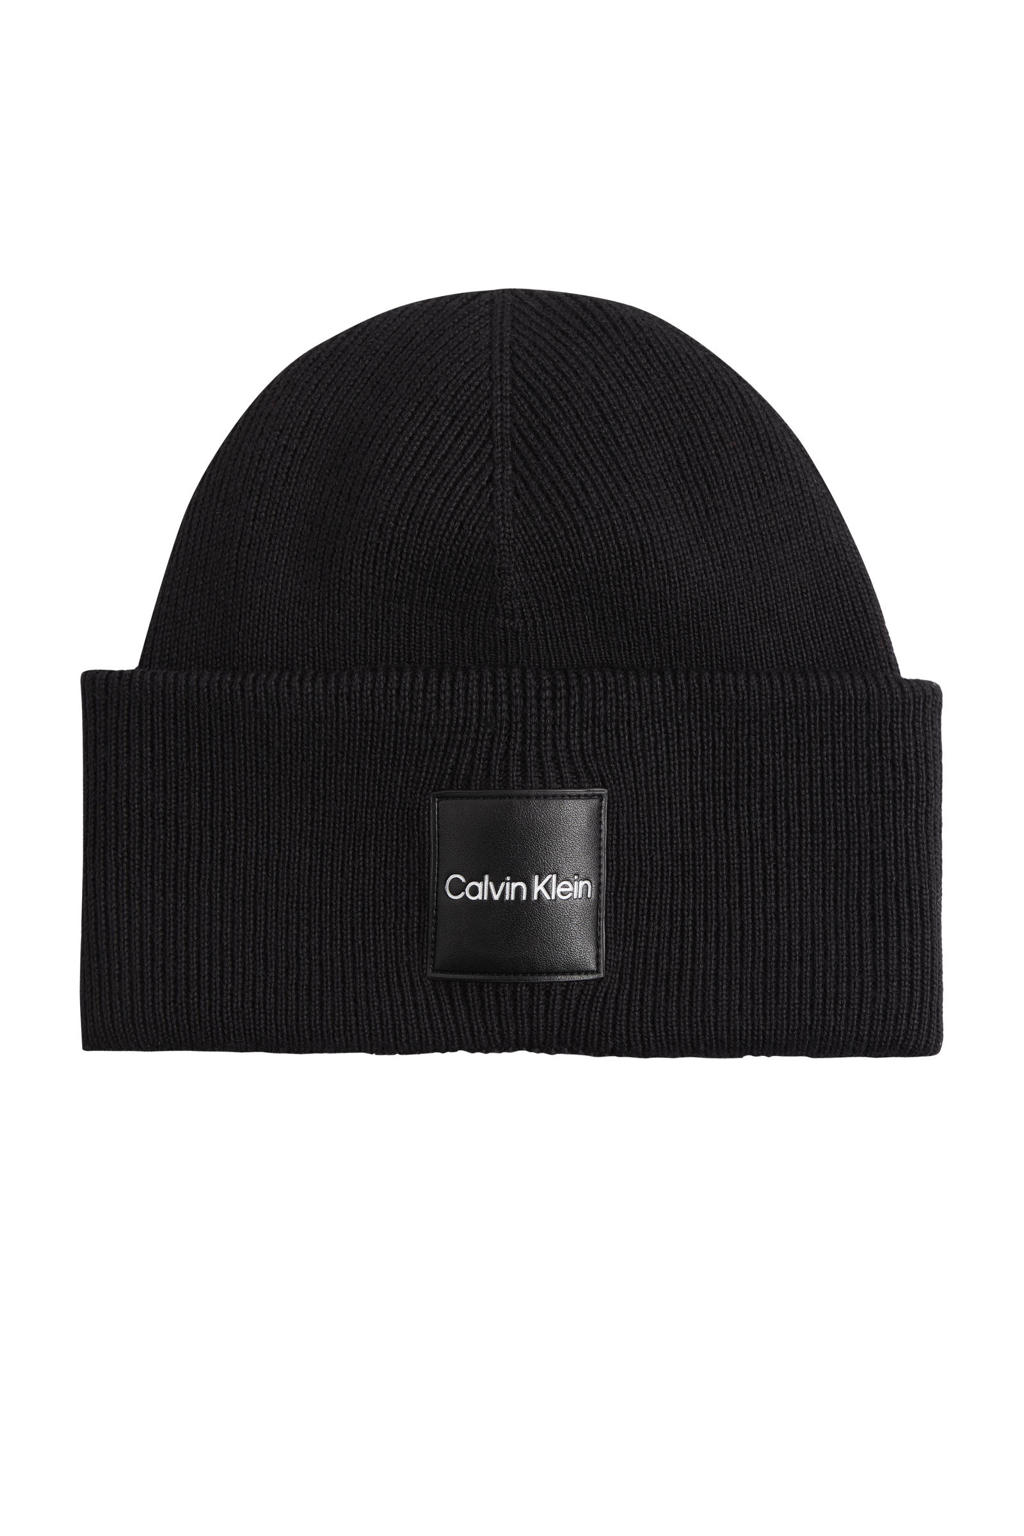 Calvin Klein muts met logo zwart